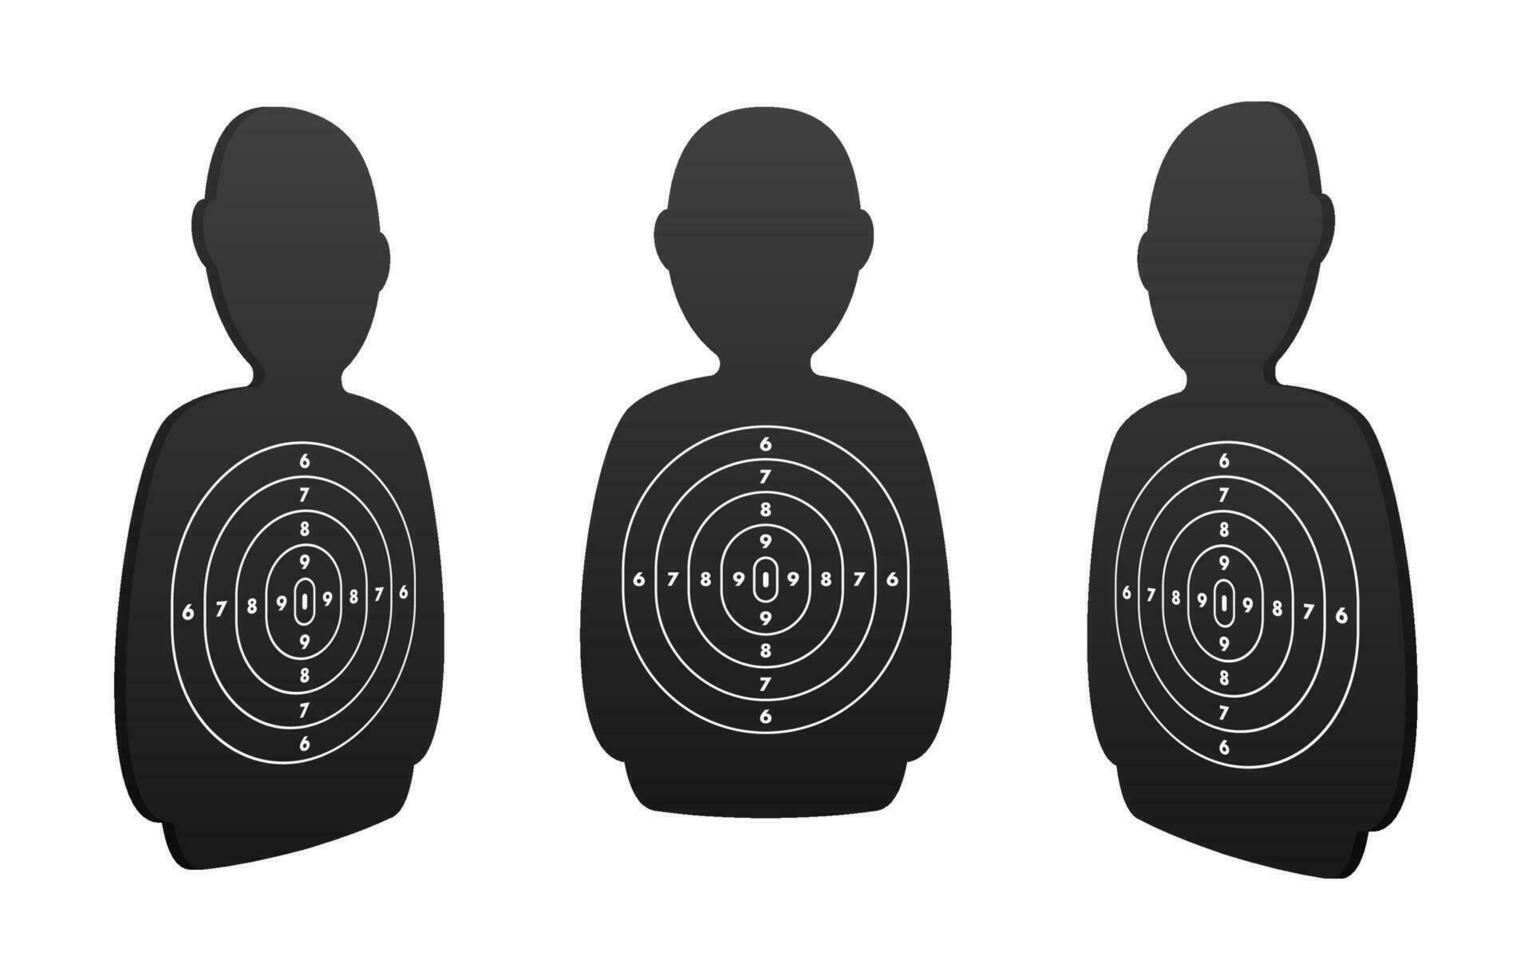 silueta humano cifras con objetivo círculos para precisión capacitación, autodefensa cursos, o disparo práctica. ideal para seguridad y táctico habilidad desarrollo imágenes vector